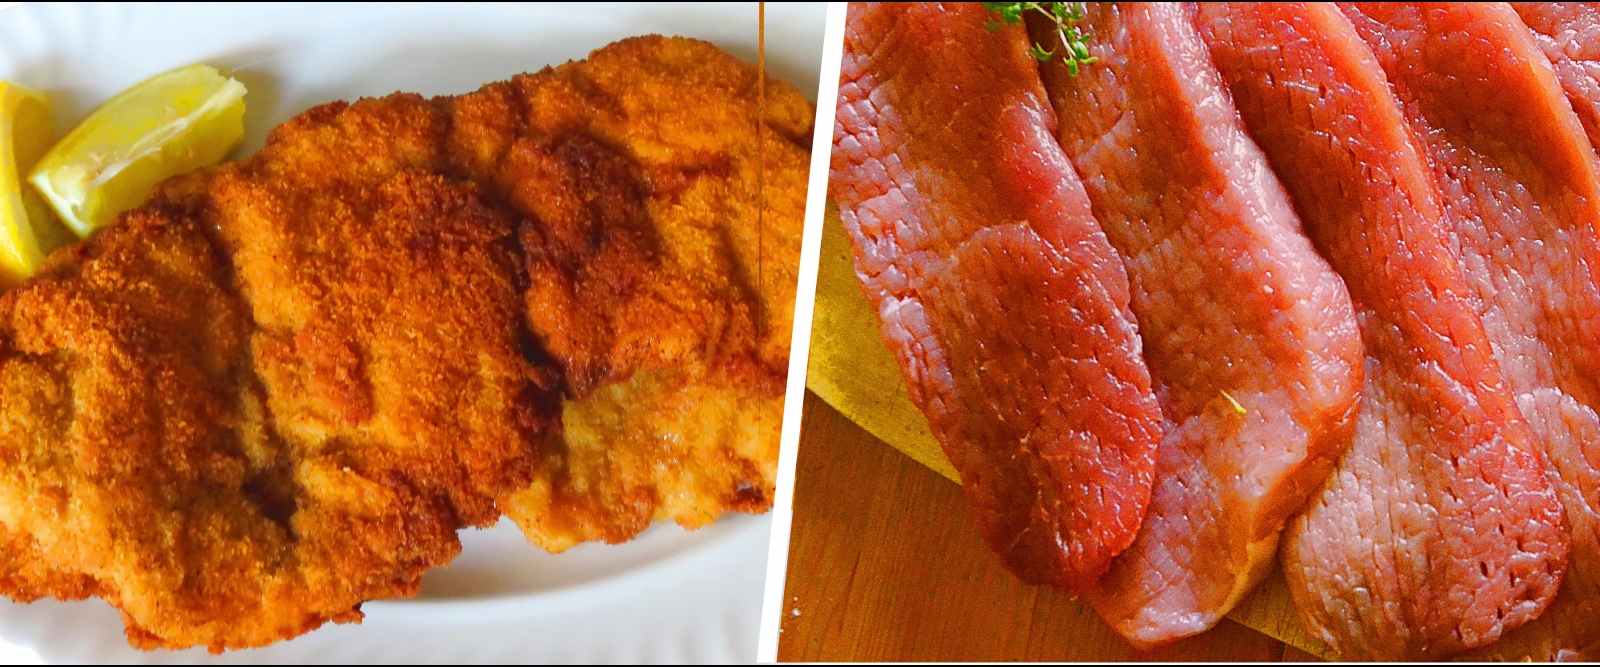 Vergleich Fleisch und Fisch mit und ohne Panade